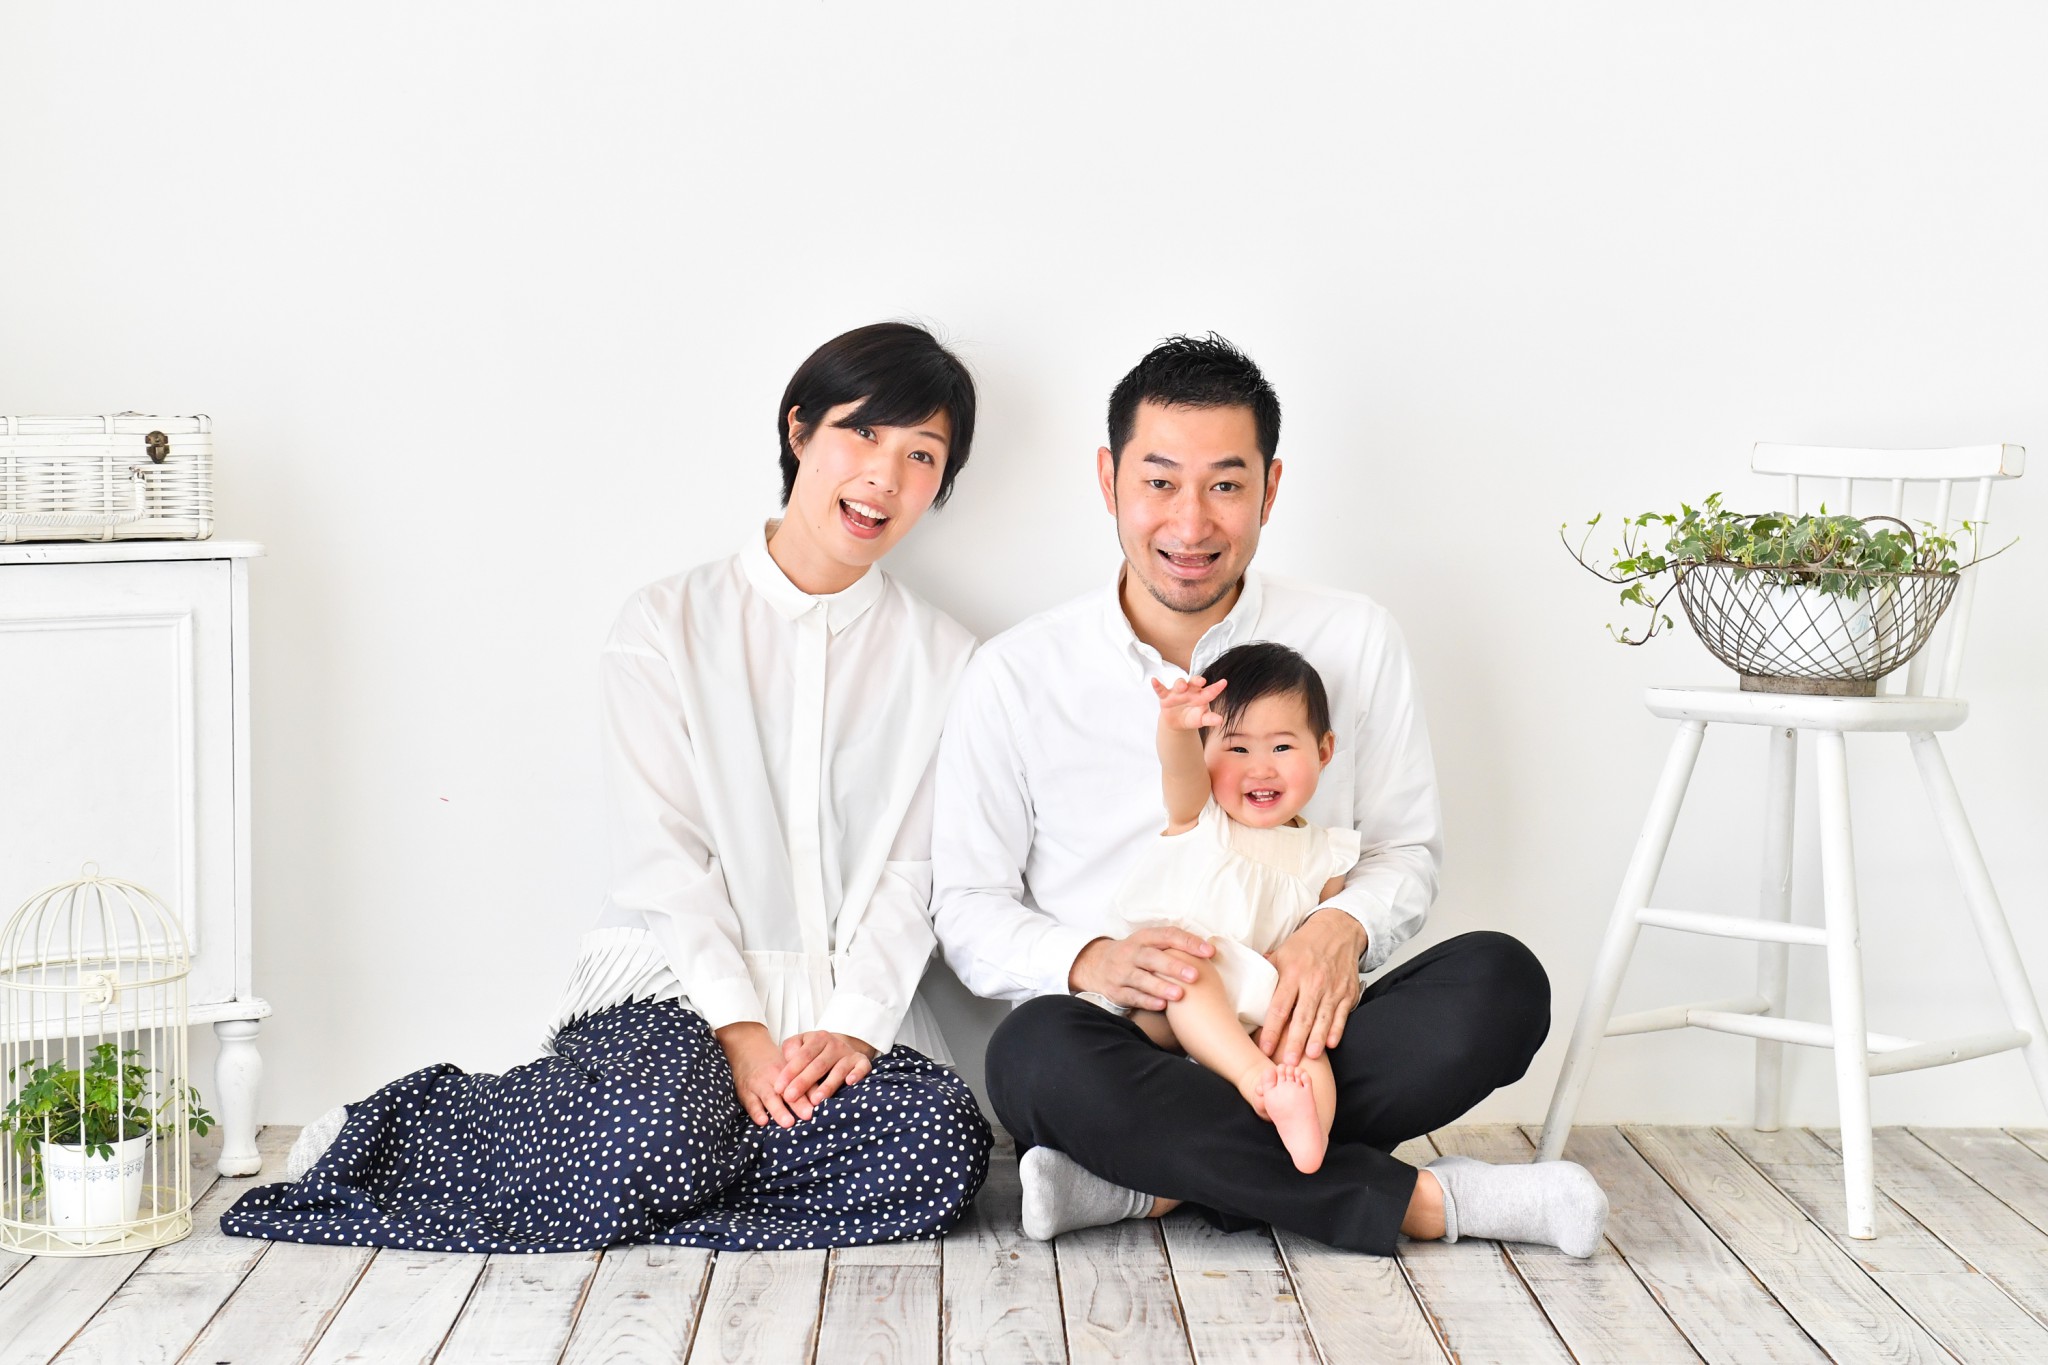 素敵に残したい 家族写真 撮影のポイント スタジオご利用ガイド２ 東京 目黒区のおしゃれな一軒家型キッズフォトスタジオ Pindot Studio